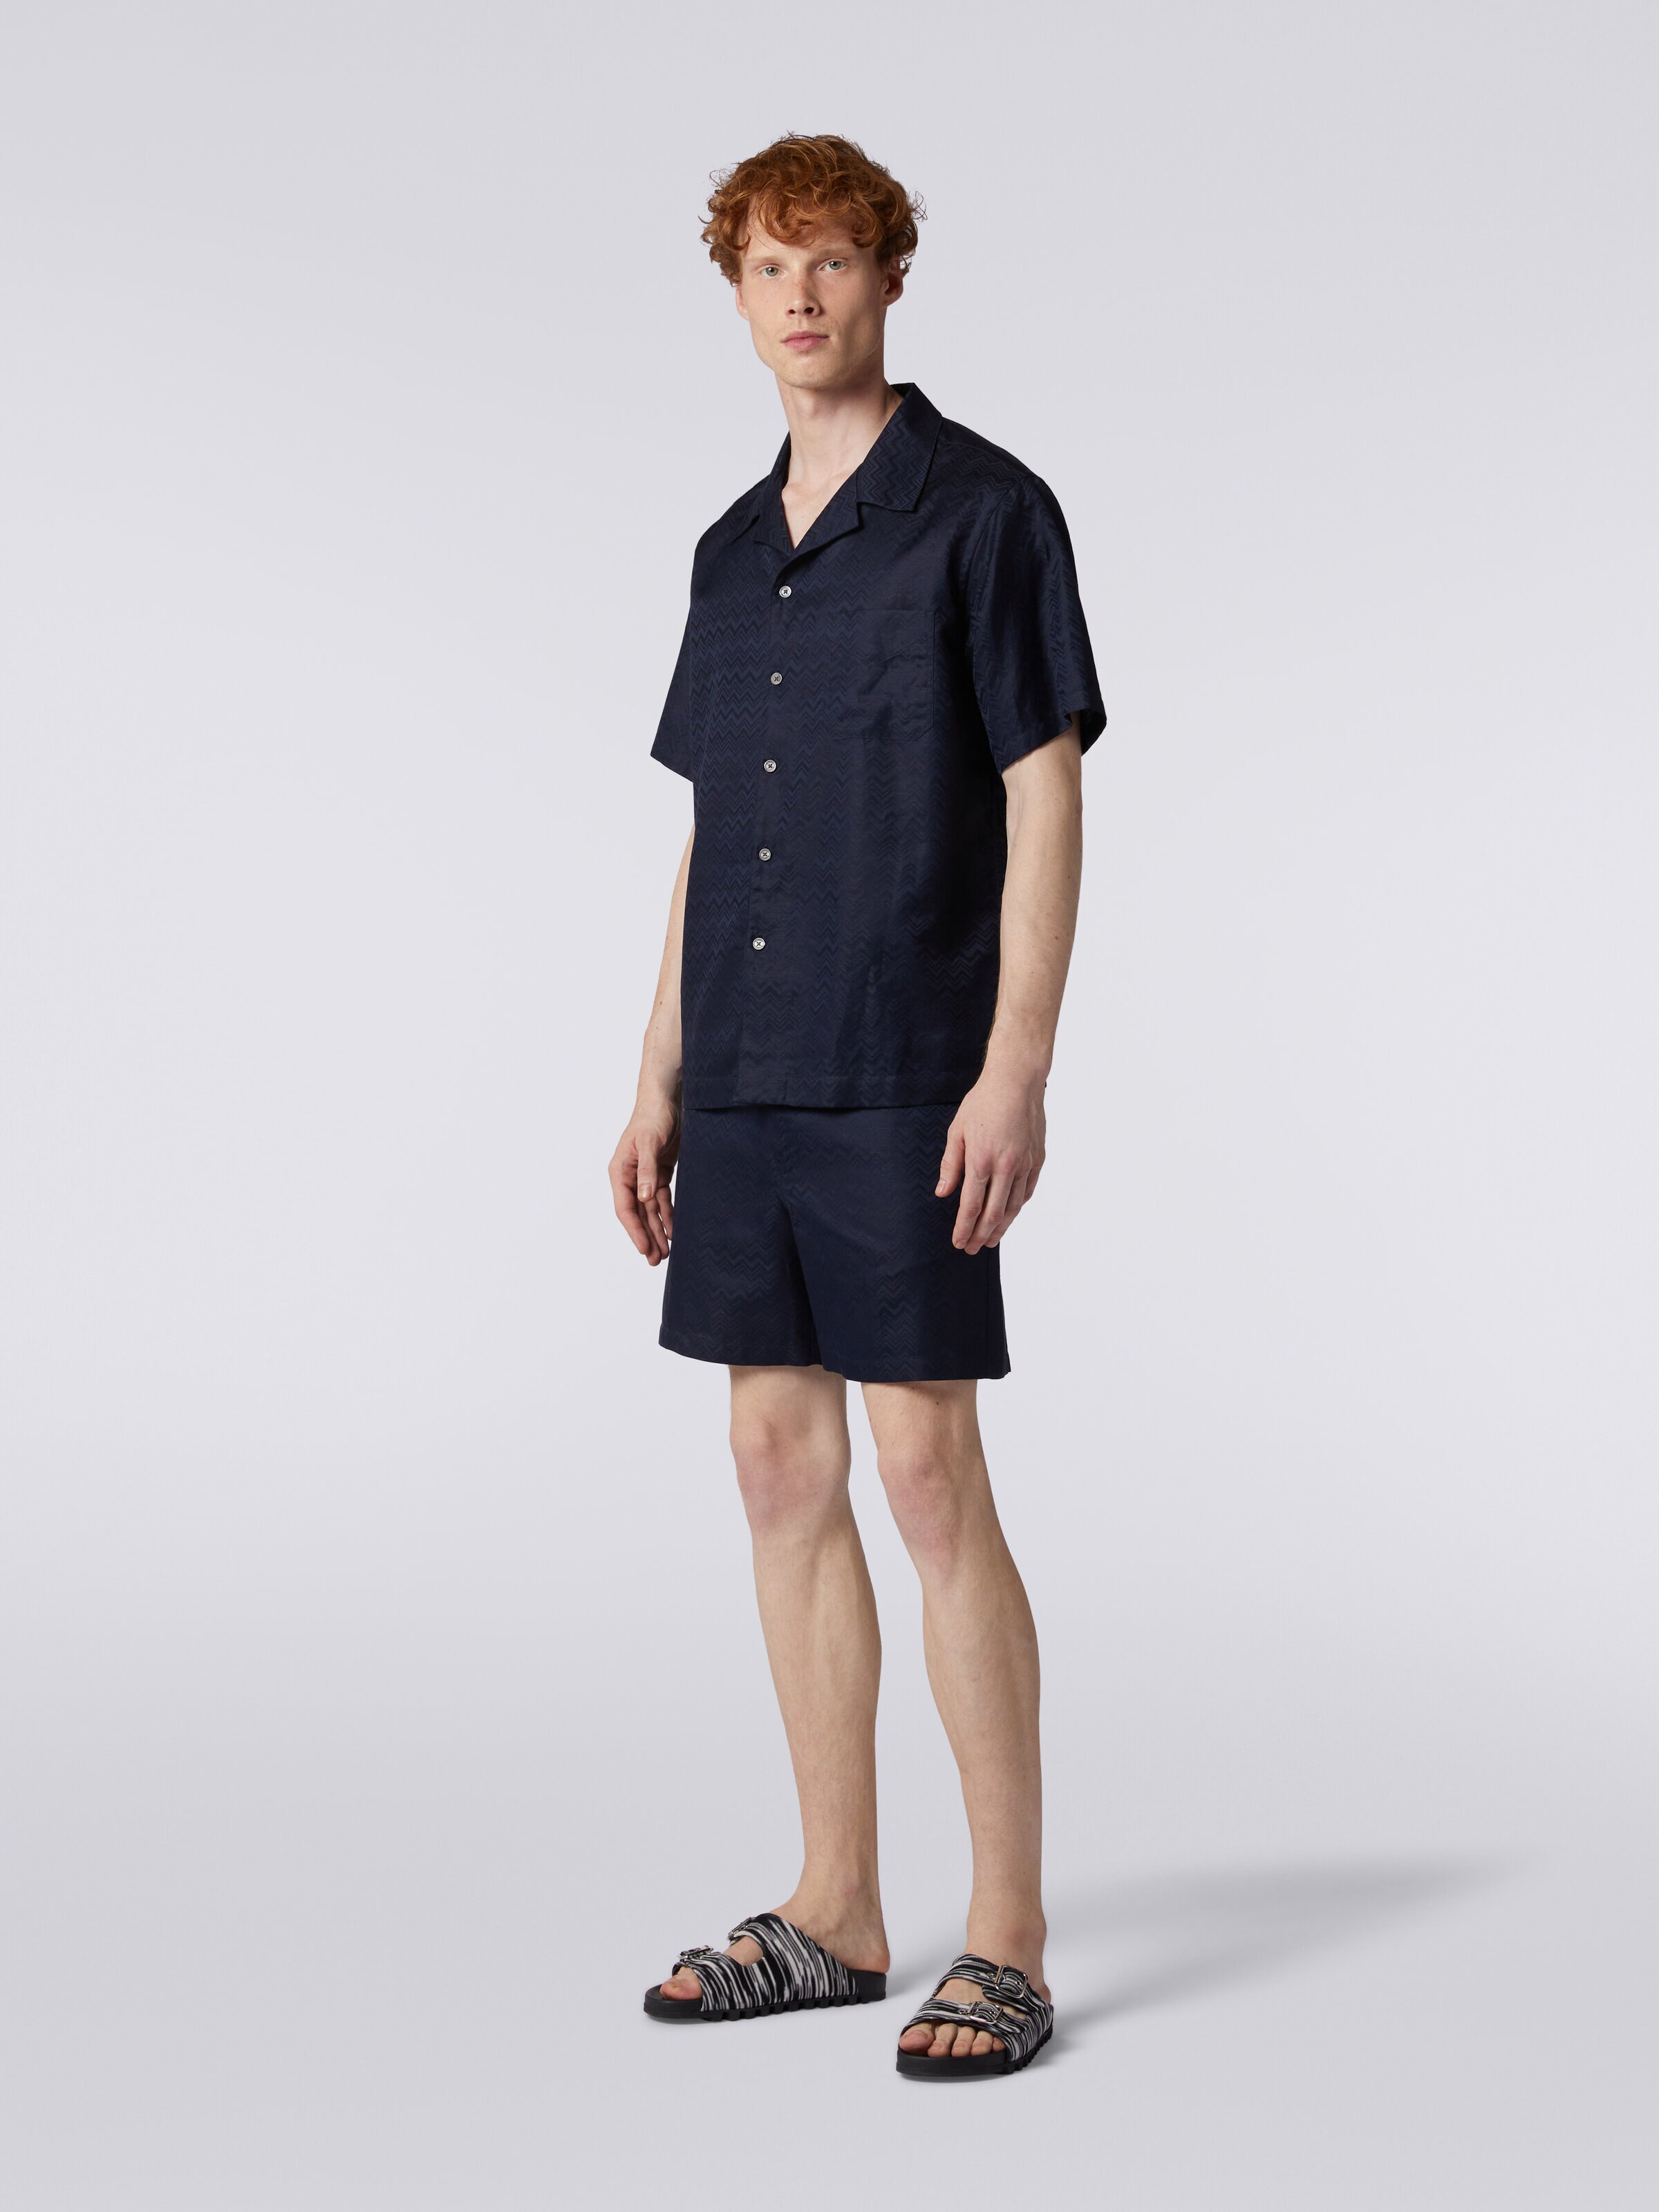 Bermuda shorts in cotton blend with zigzag pattern, Dark Blue - 2